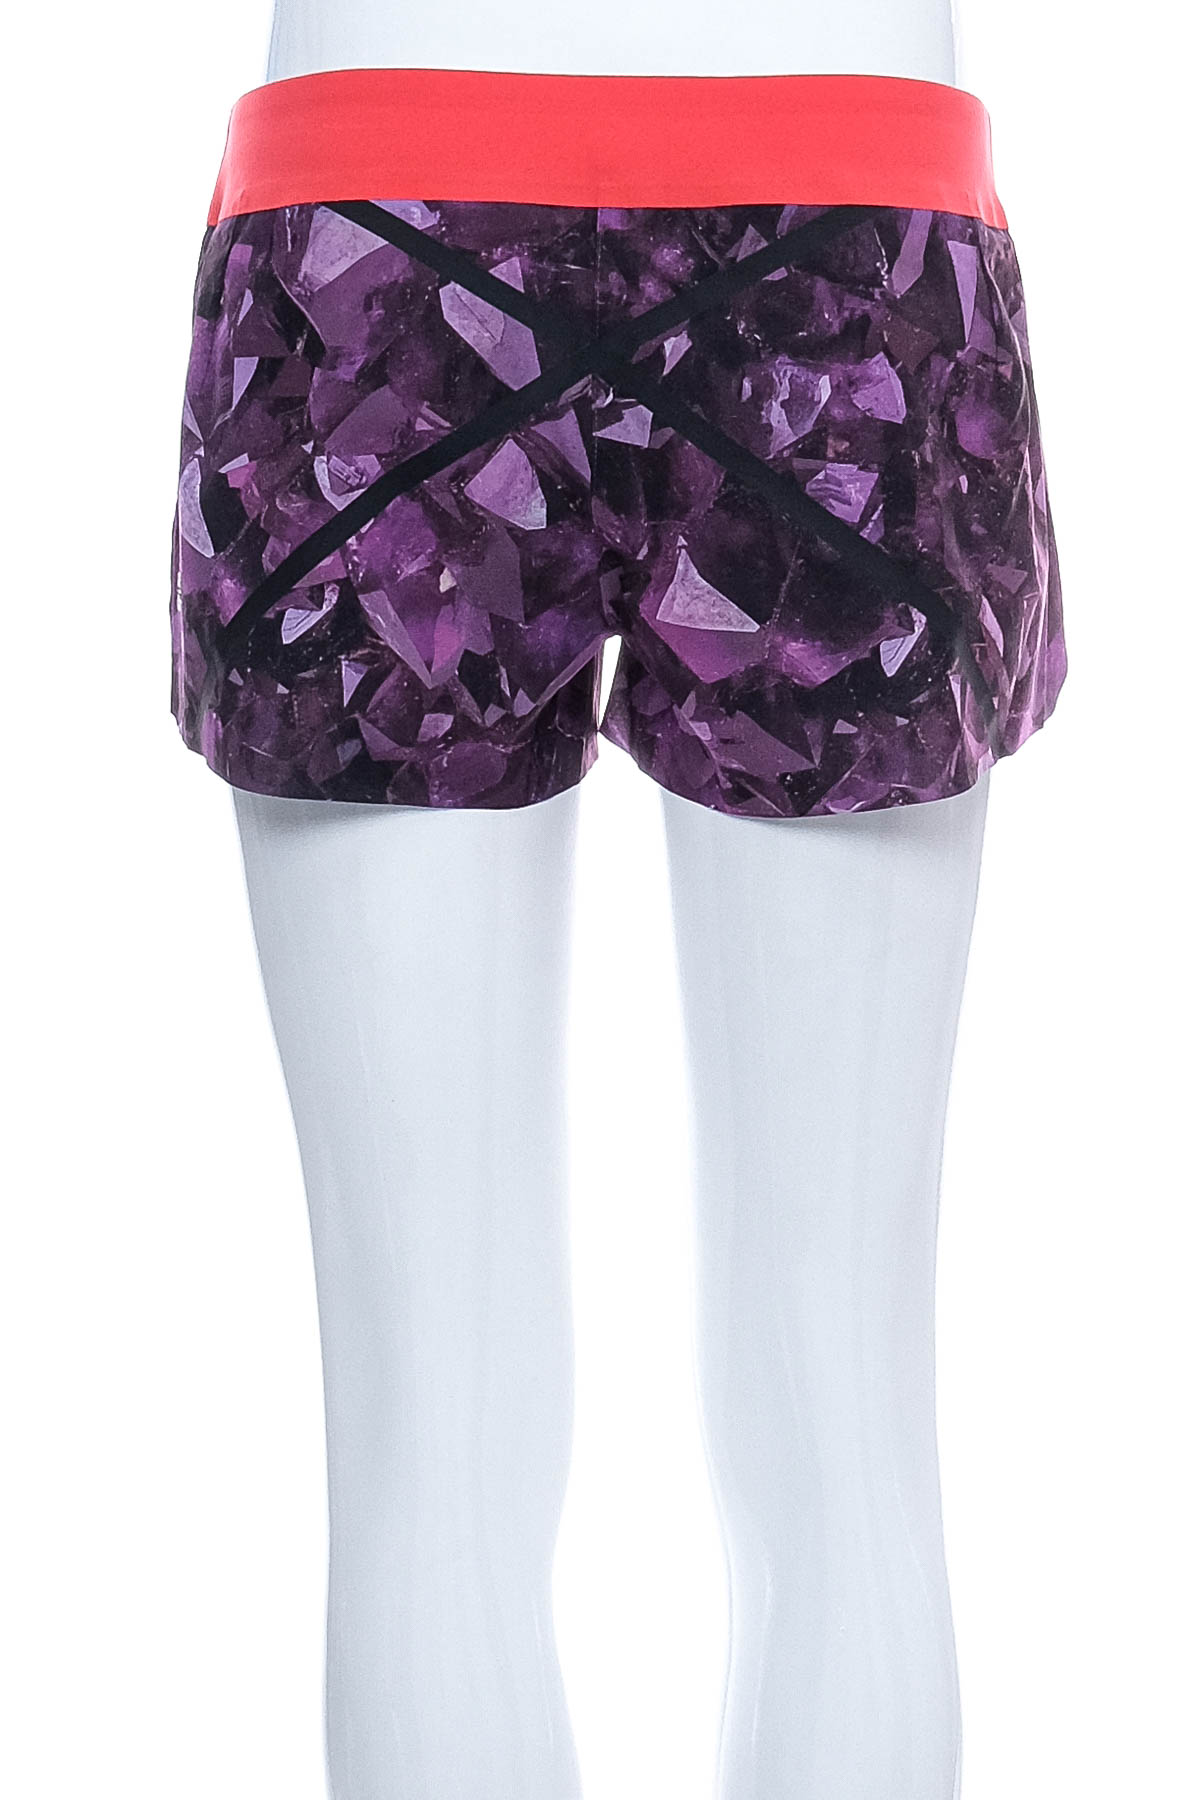 Women's shorts - Reebok Crossfit - 1